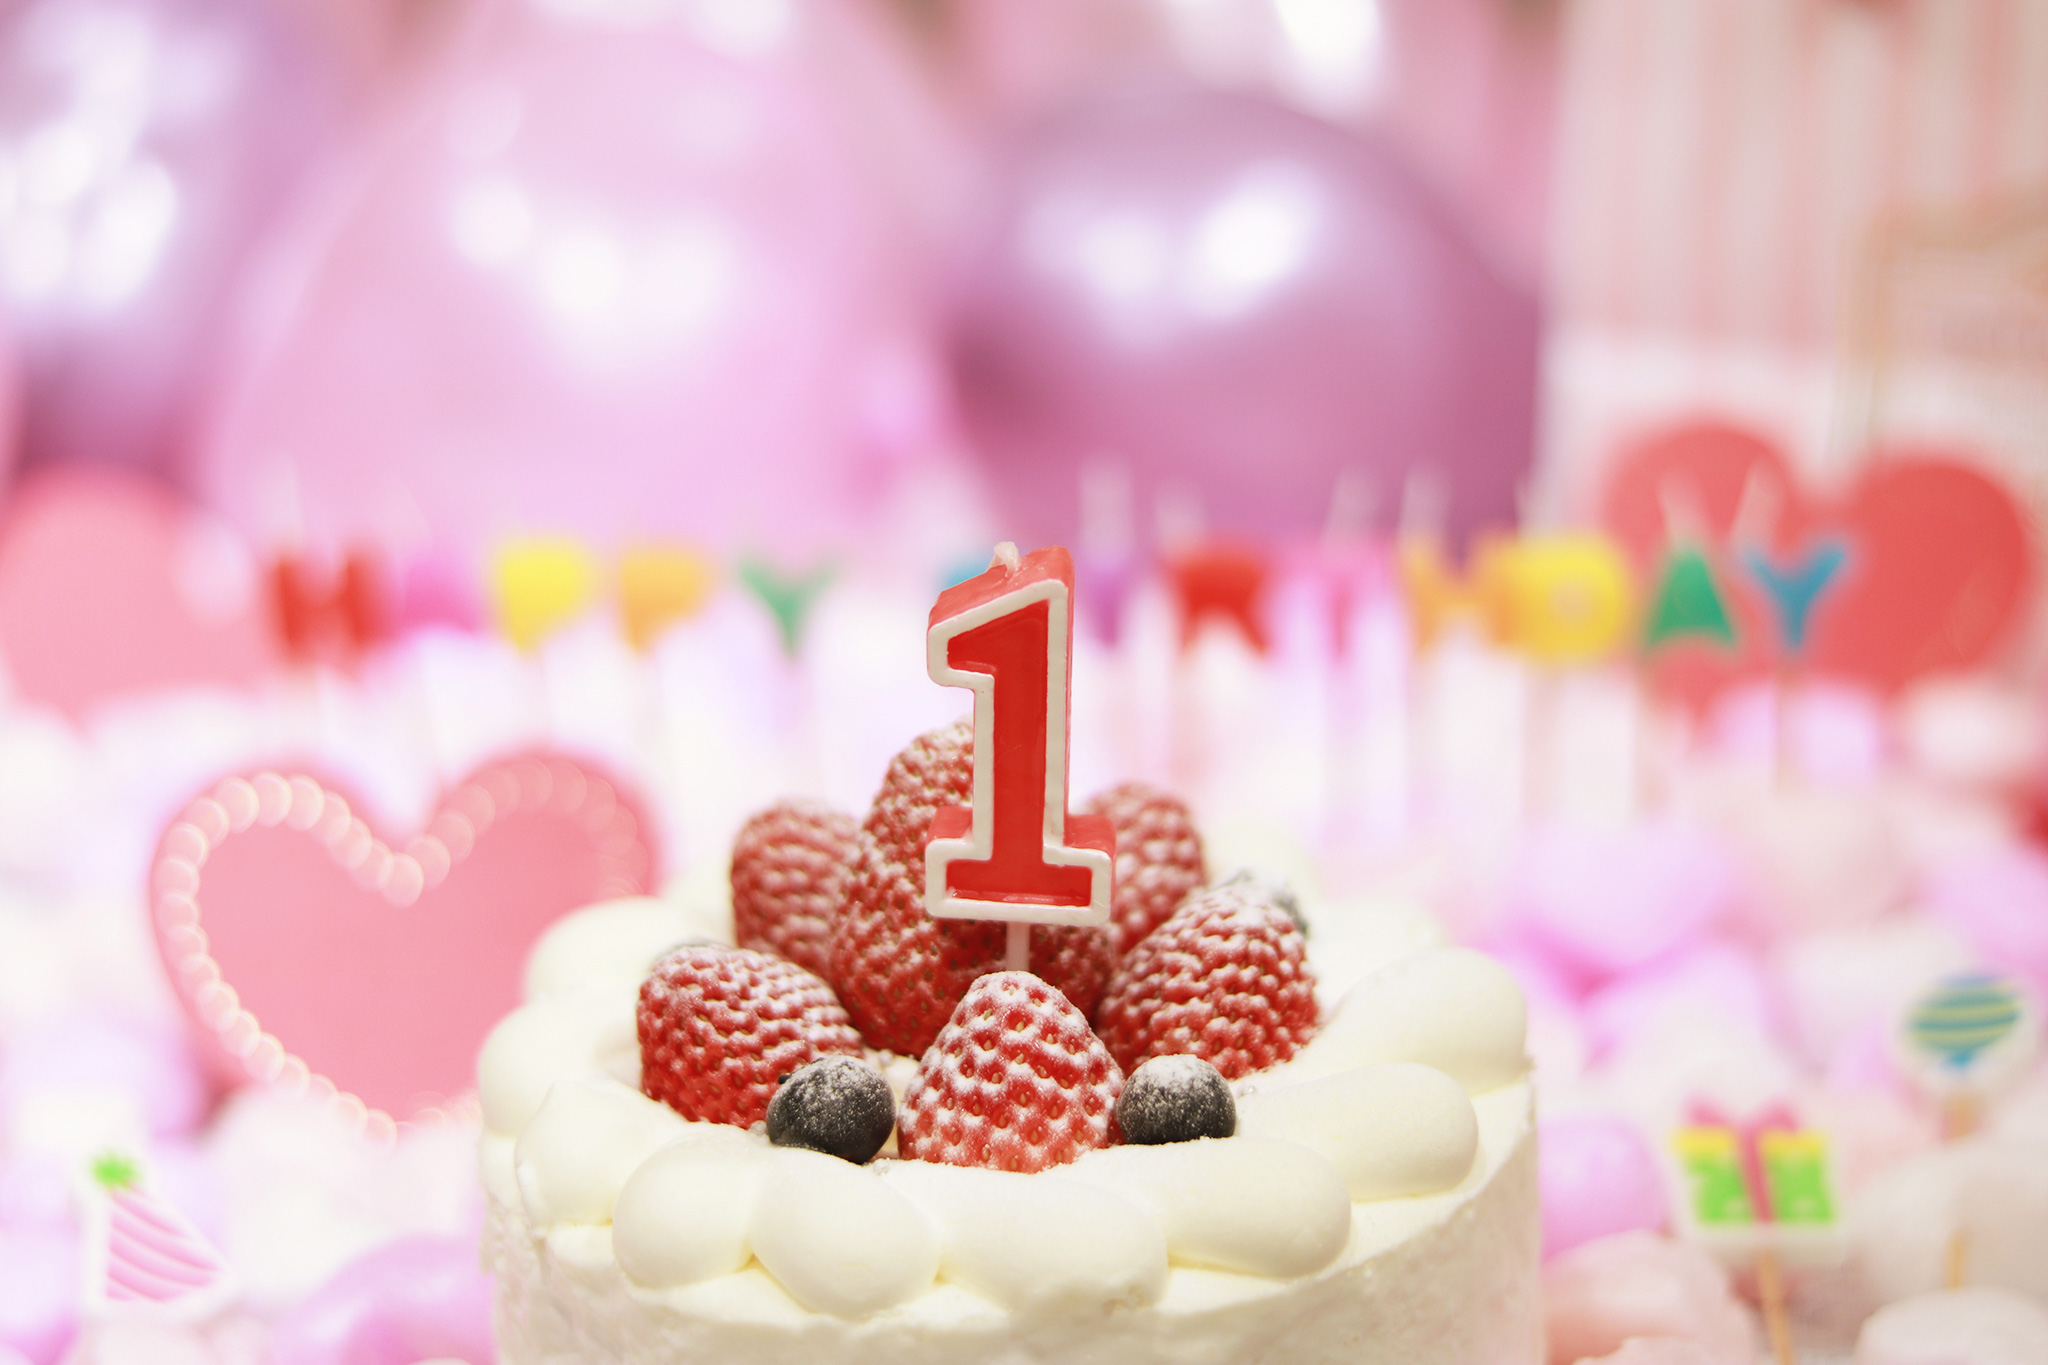 オシャレな誕生日画像 可愛いケーキとキャンドルでお祝い 1歳編 のフリー画像 おしゃれなフリー写真素材 Girly Drop